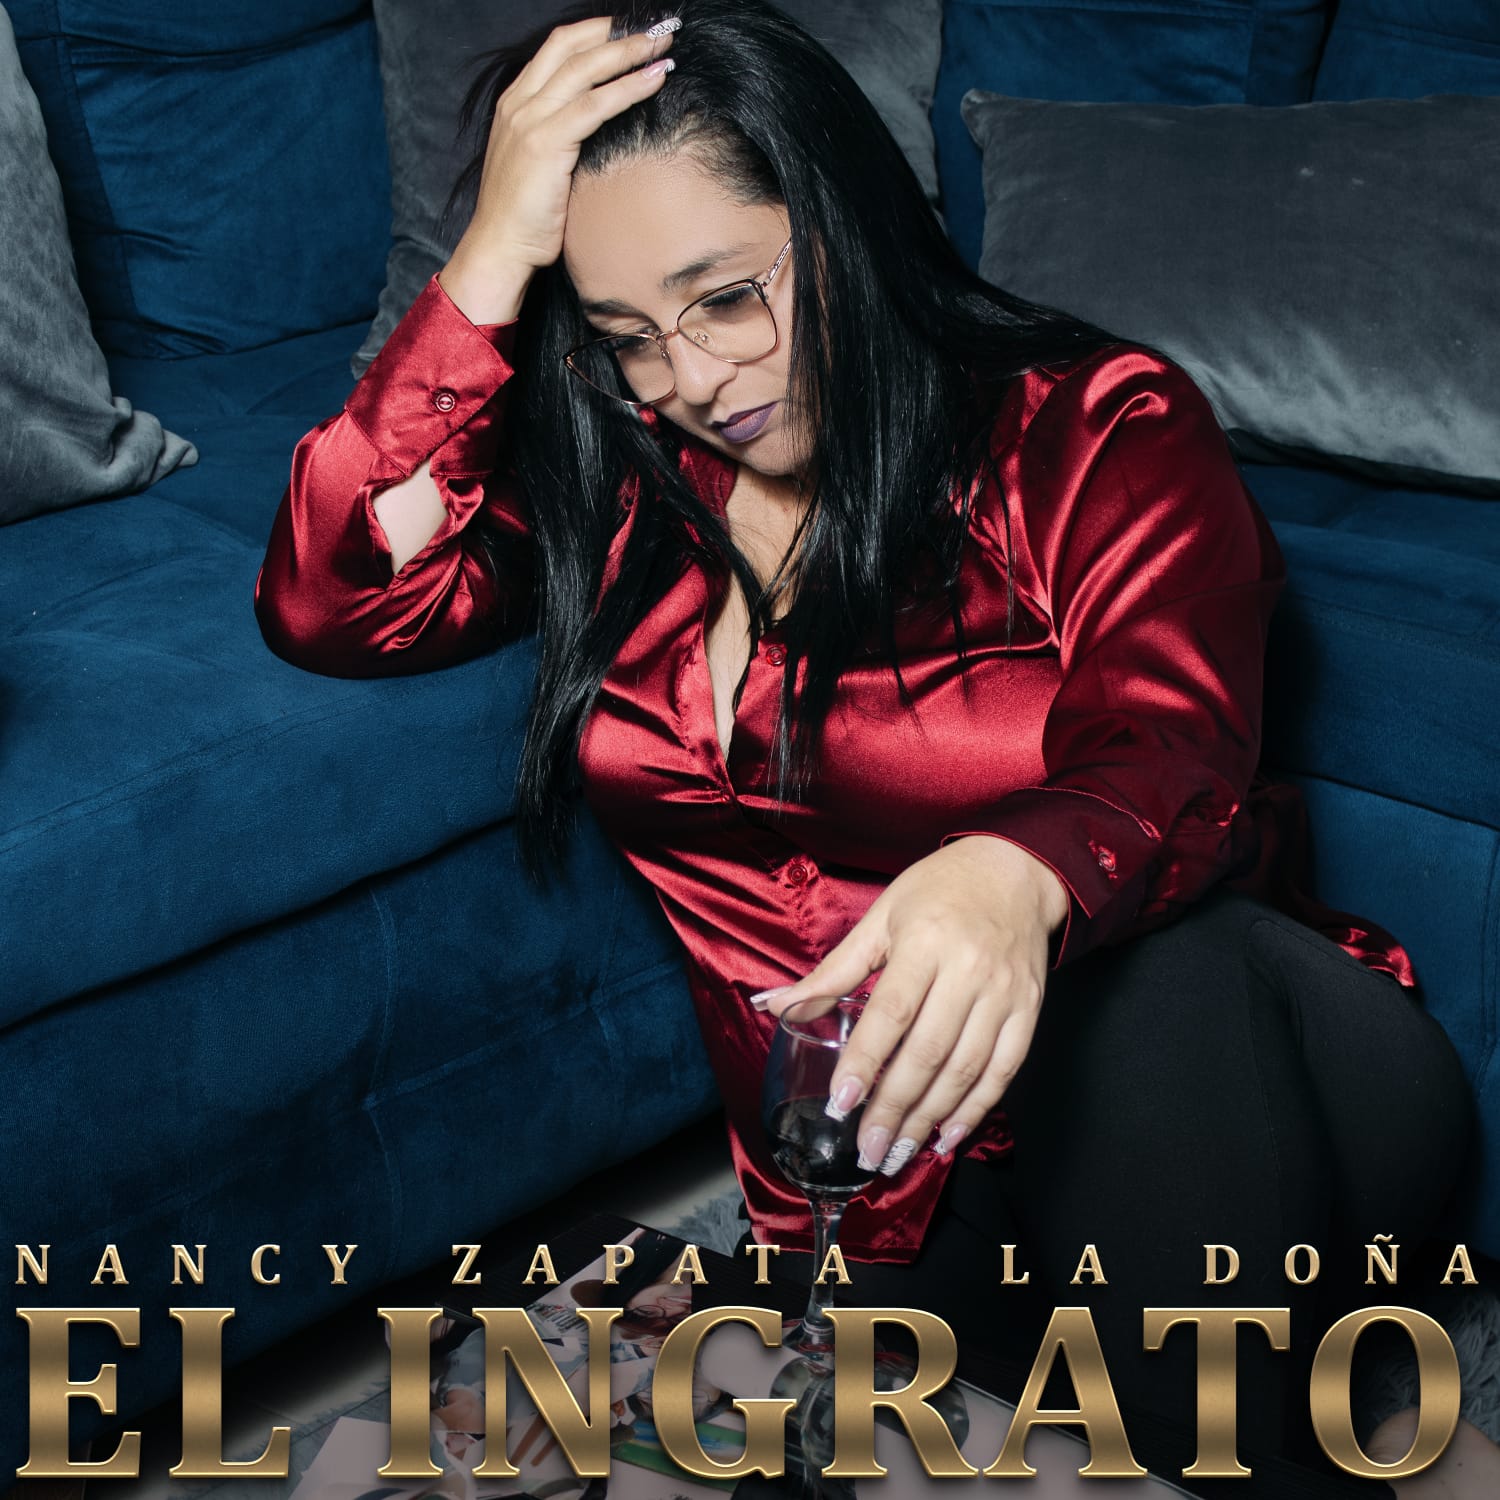 «El Ingrato», el nuevo sencillo de Nancy Zapata «La Doña»